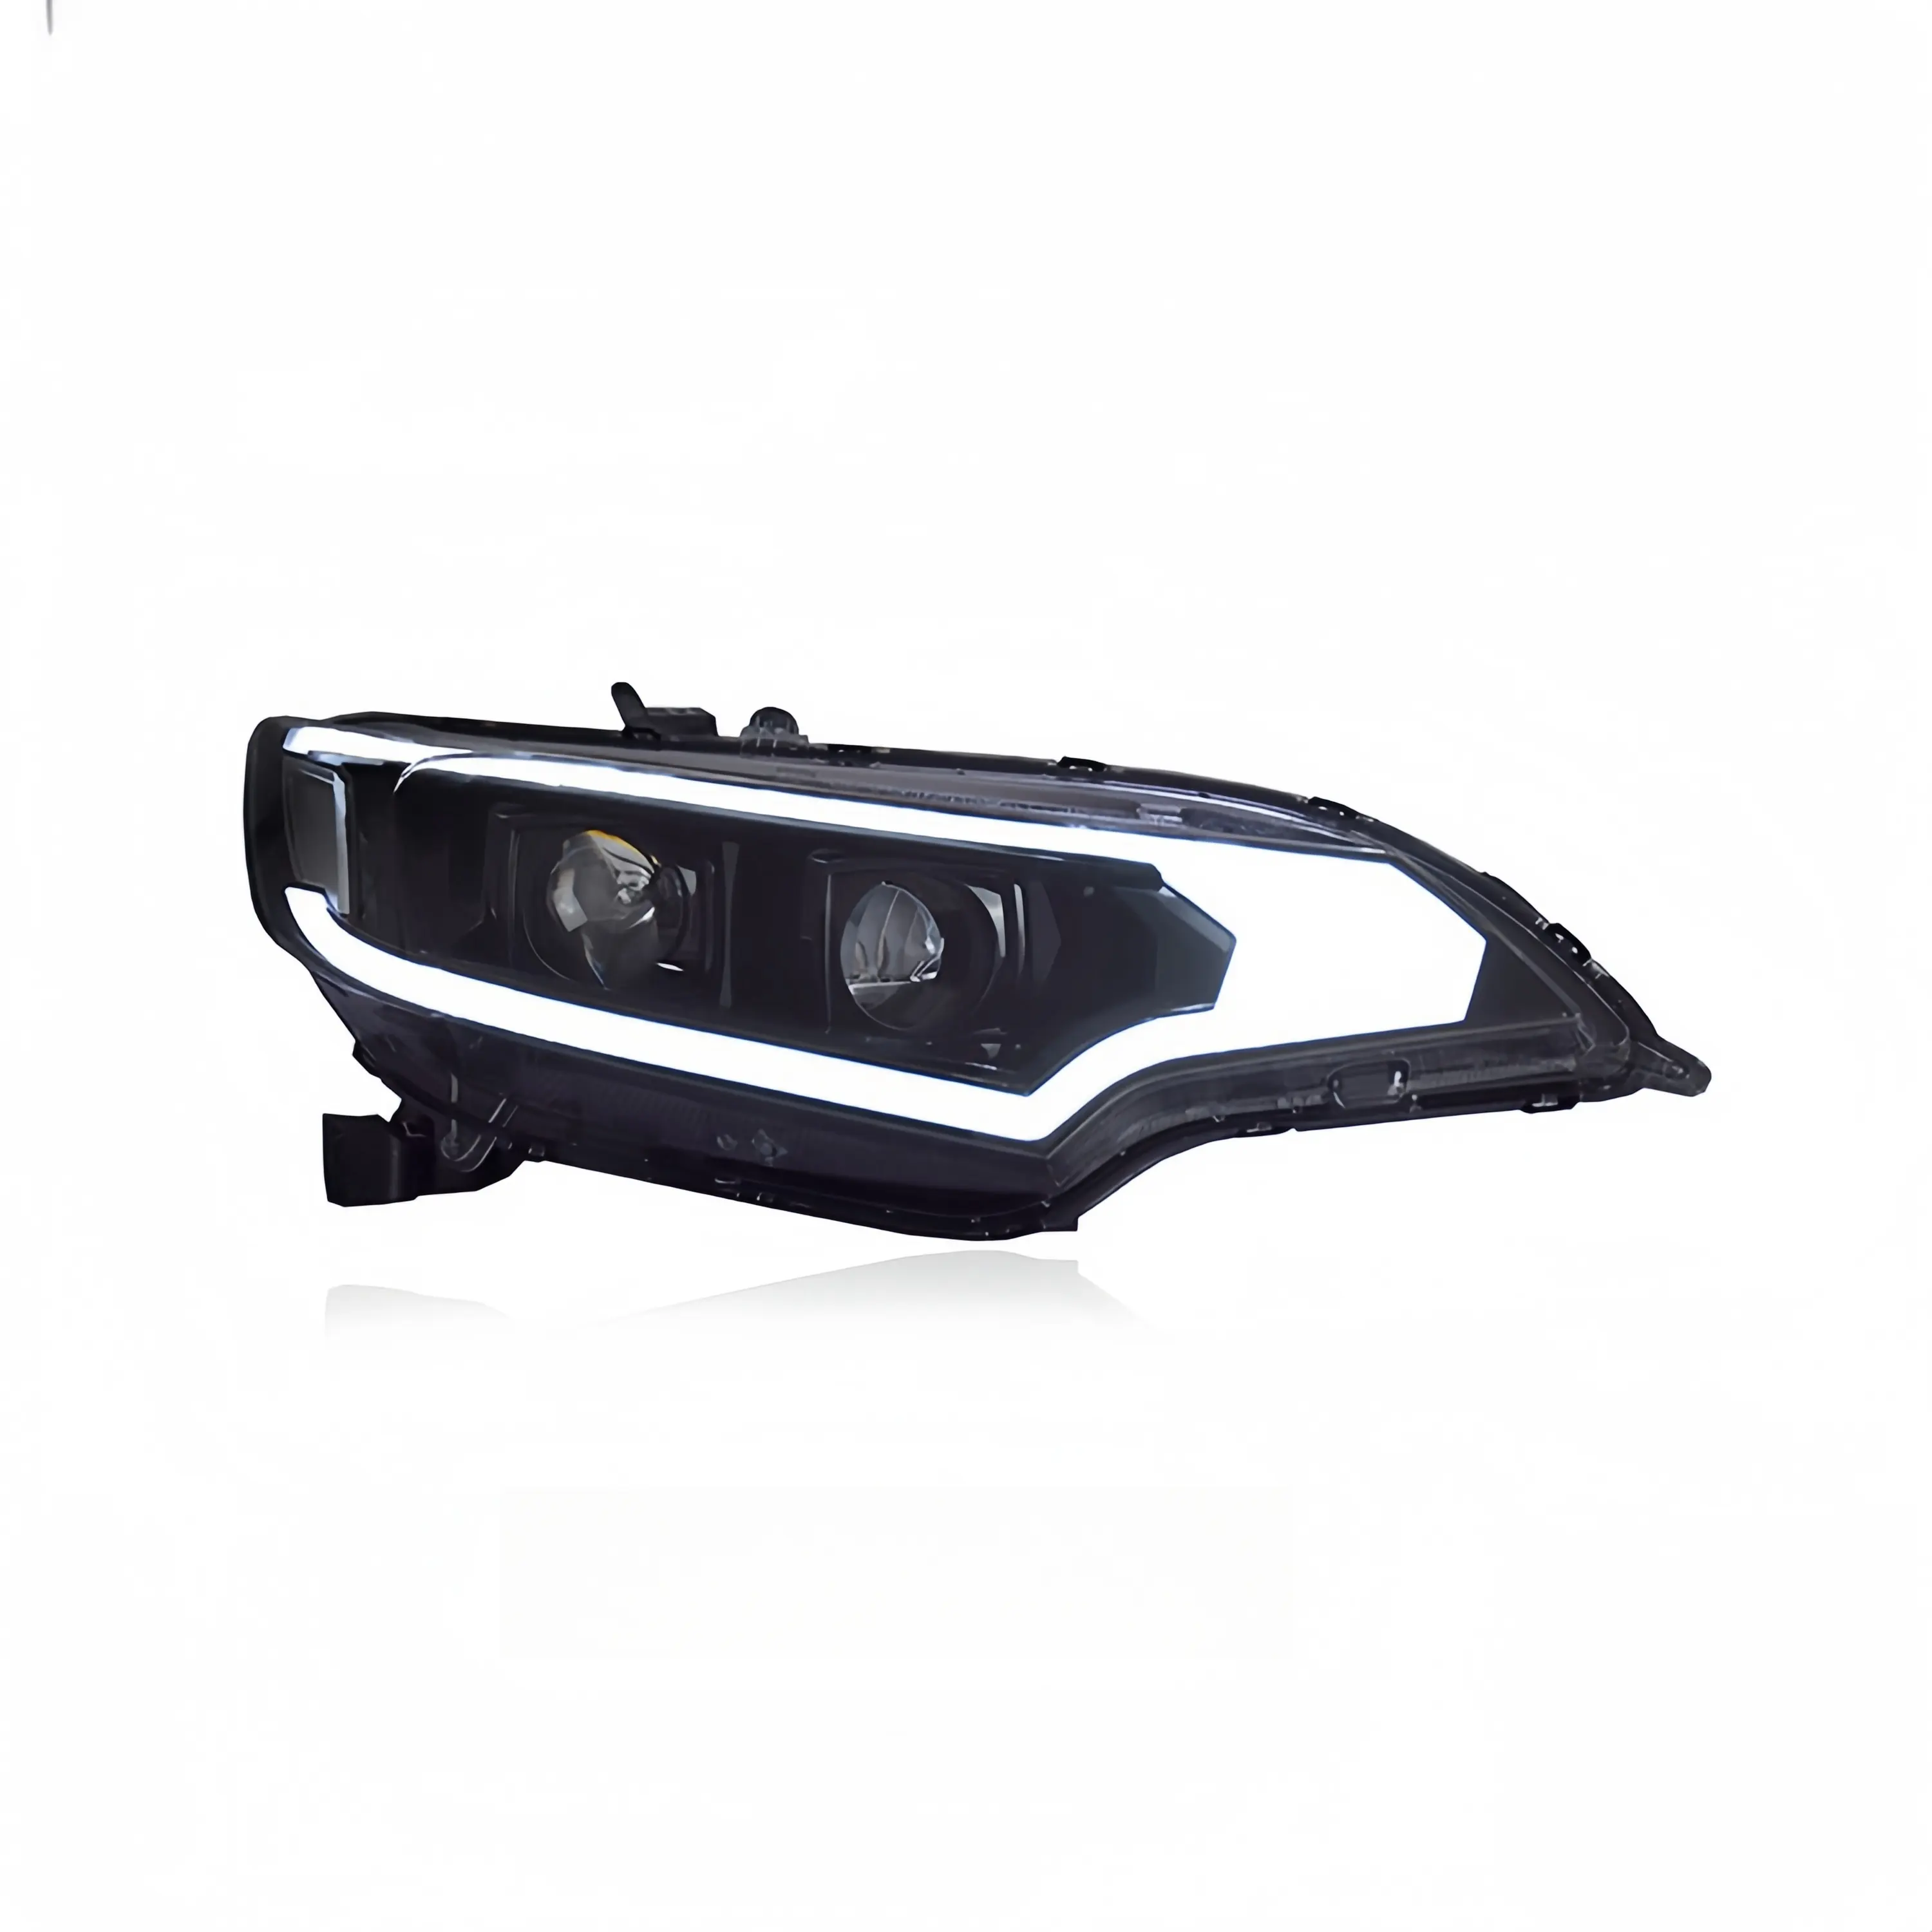 ホンダフィット14-20モデルのキセノンヘッドライトとヘッドライト照明システムのアップグレードに使用